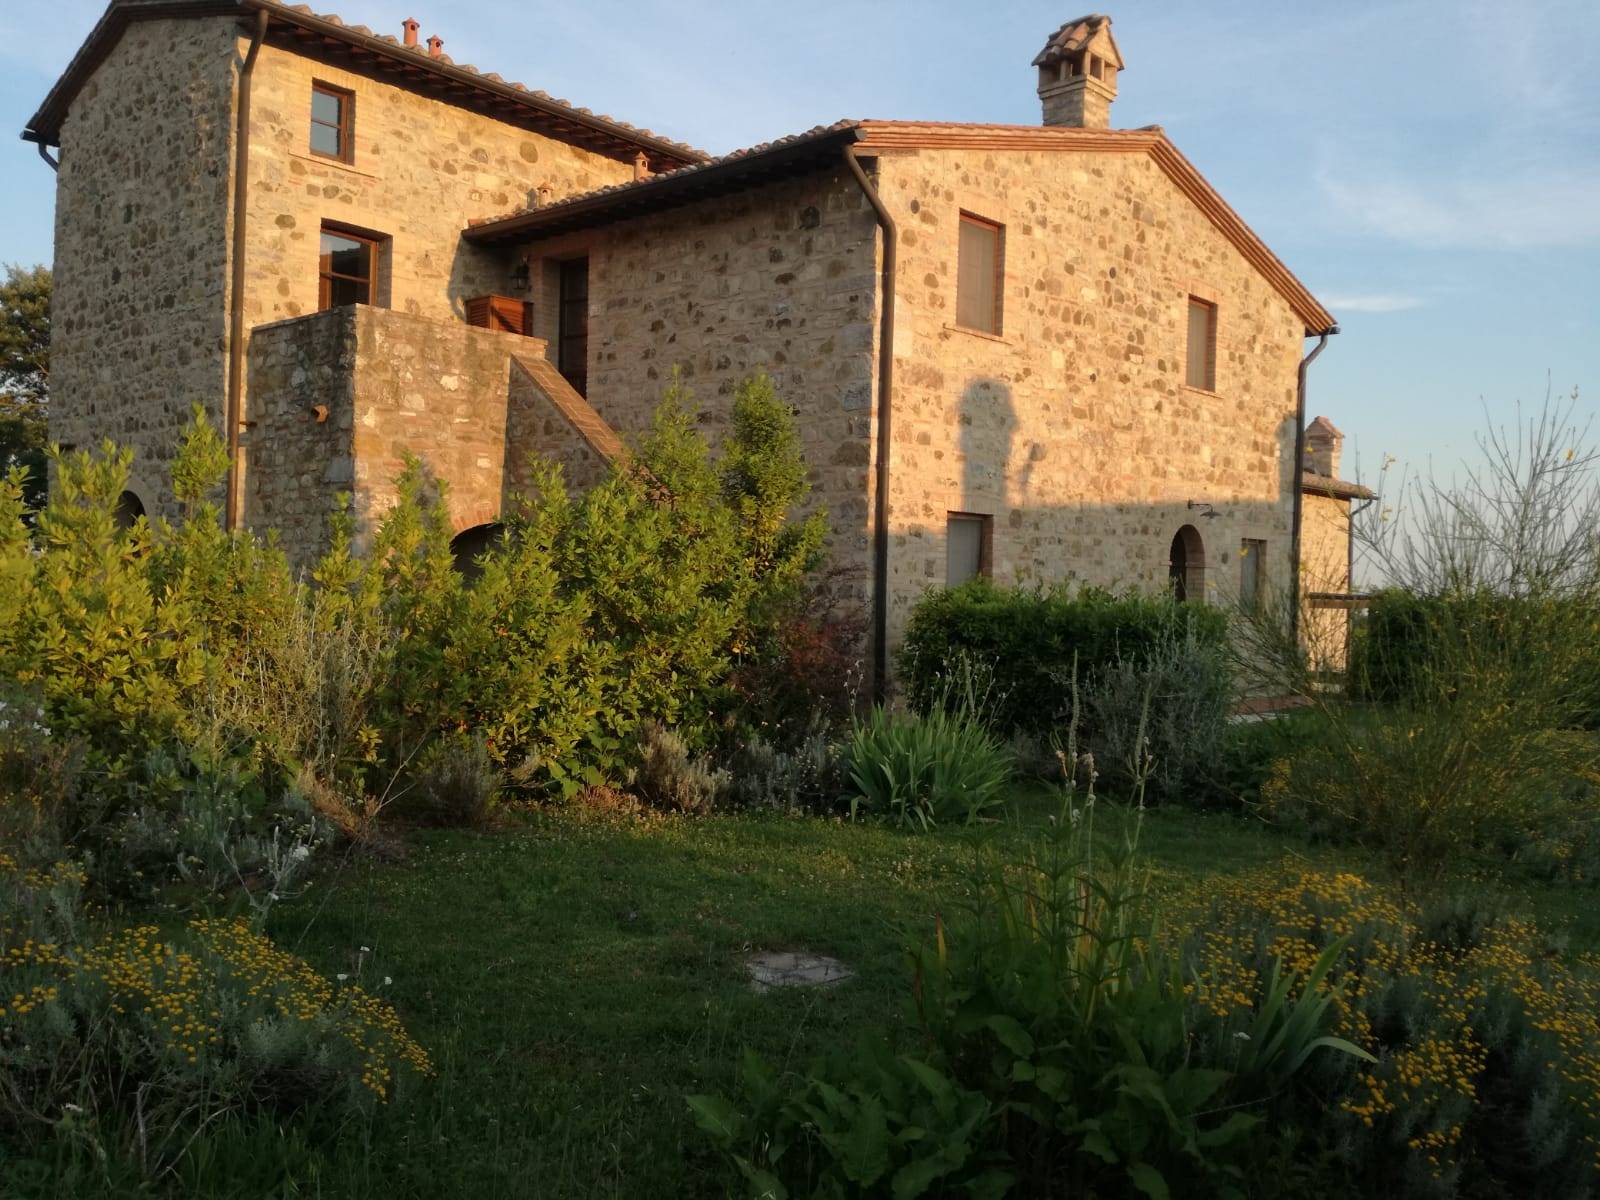 Rustico / Casale in affitto a Roccalbegna, 3 locali, zona Zona: Triana, prezzo € 4.400 | CambioCasa.it